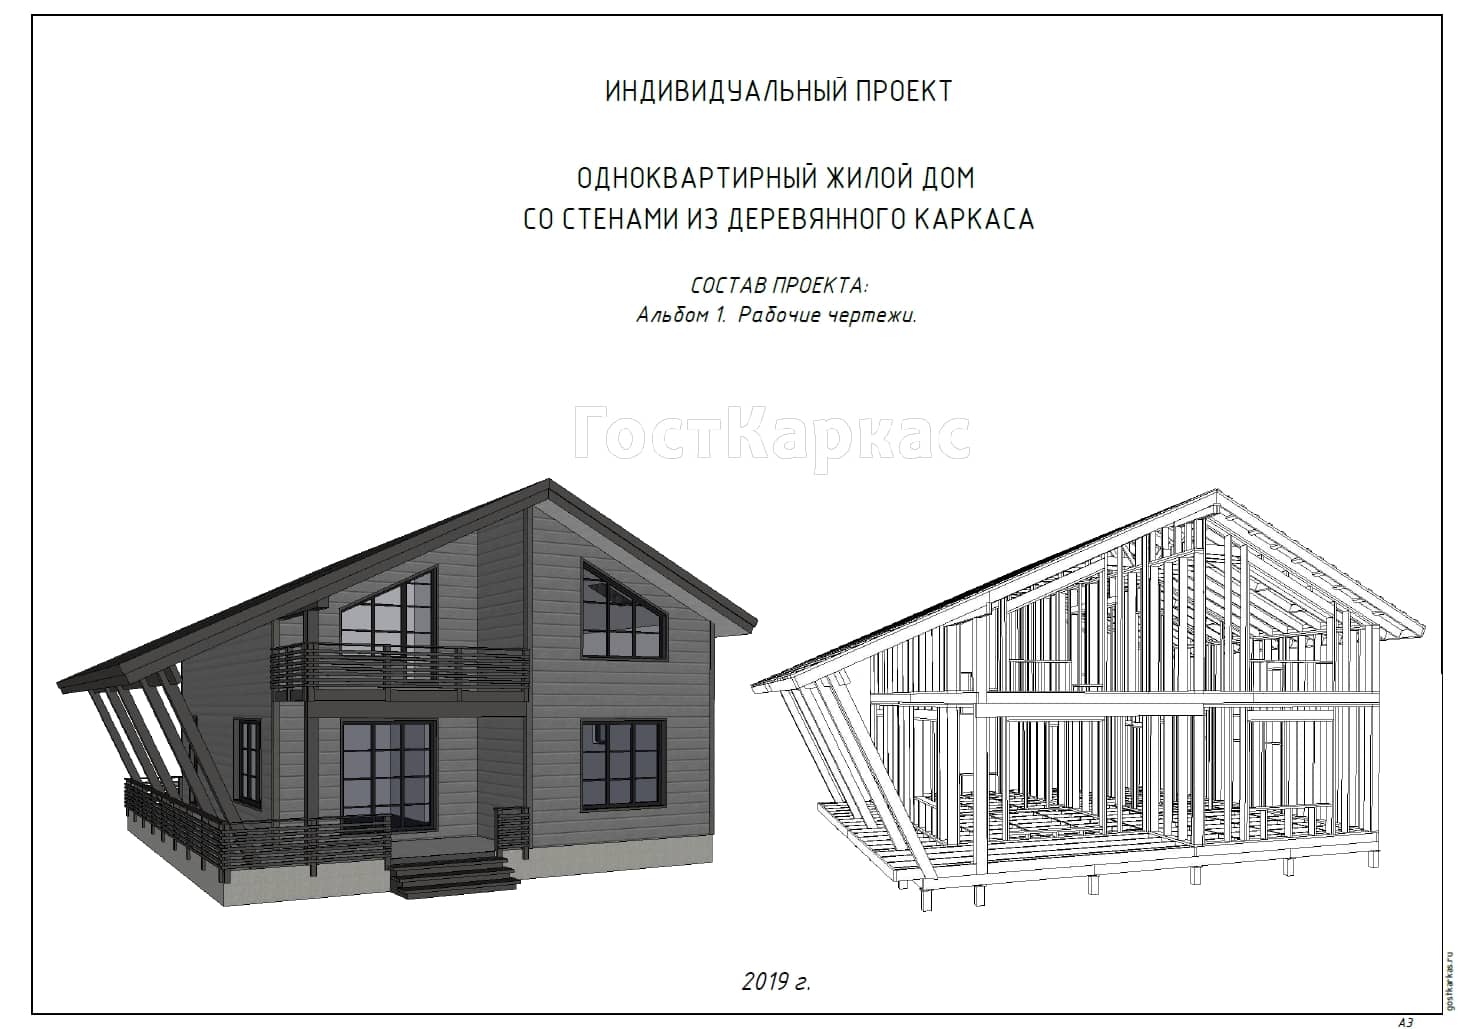 Проект каркасного дома К 205 строительство в Тольятти